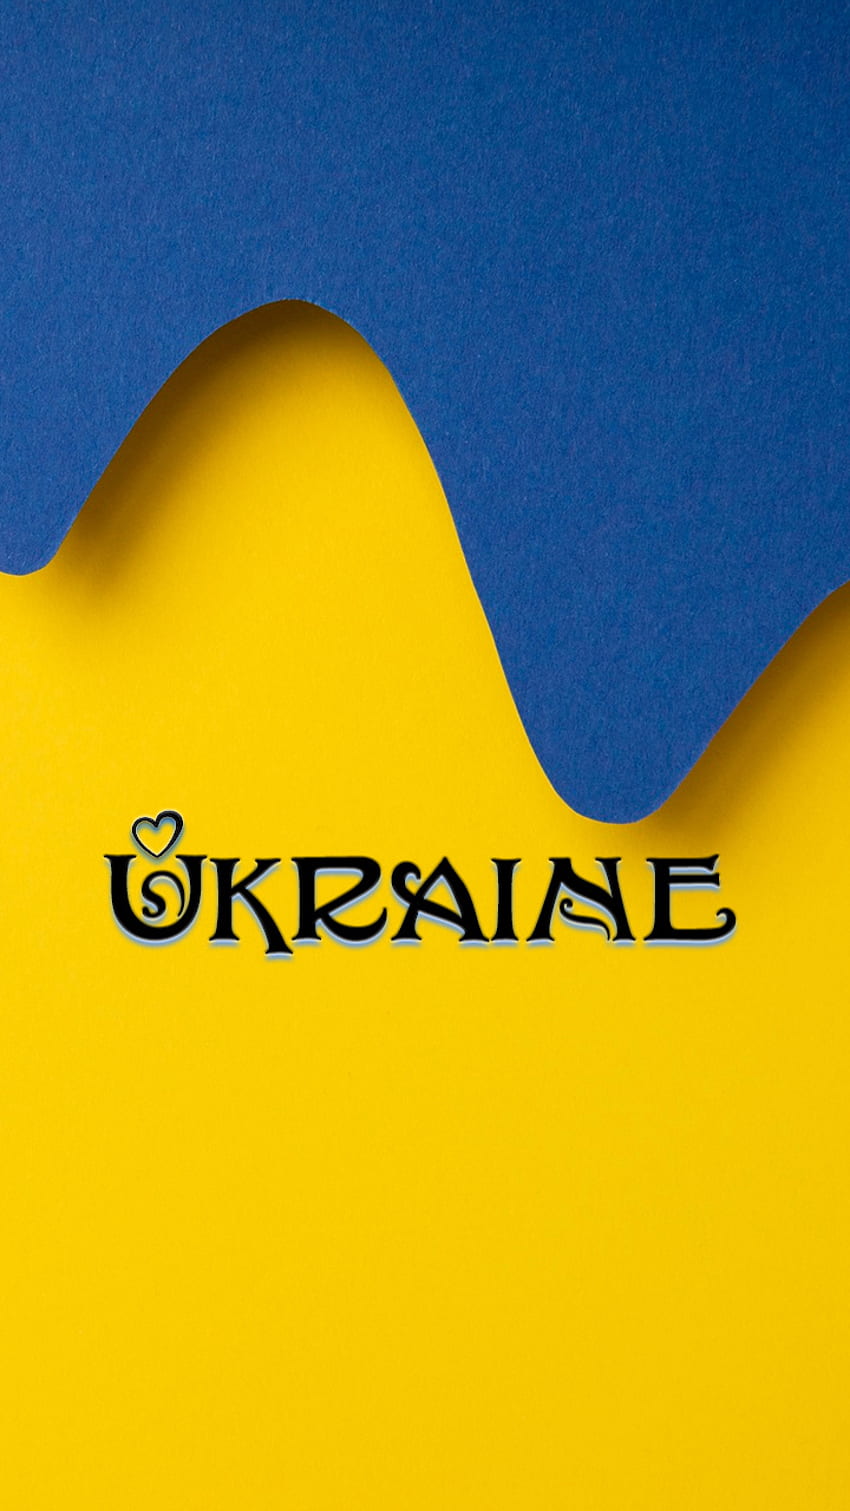 テキスト ウクライナ 3、愛、ことわざ、旗、青、平和、黄色、シンプル、ハート HD電話の壁紙